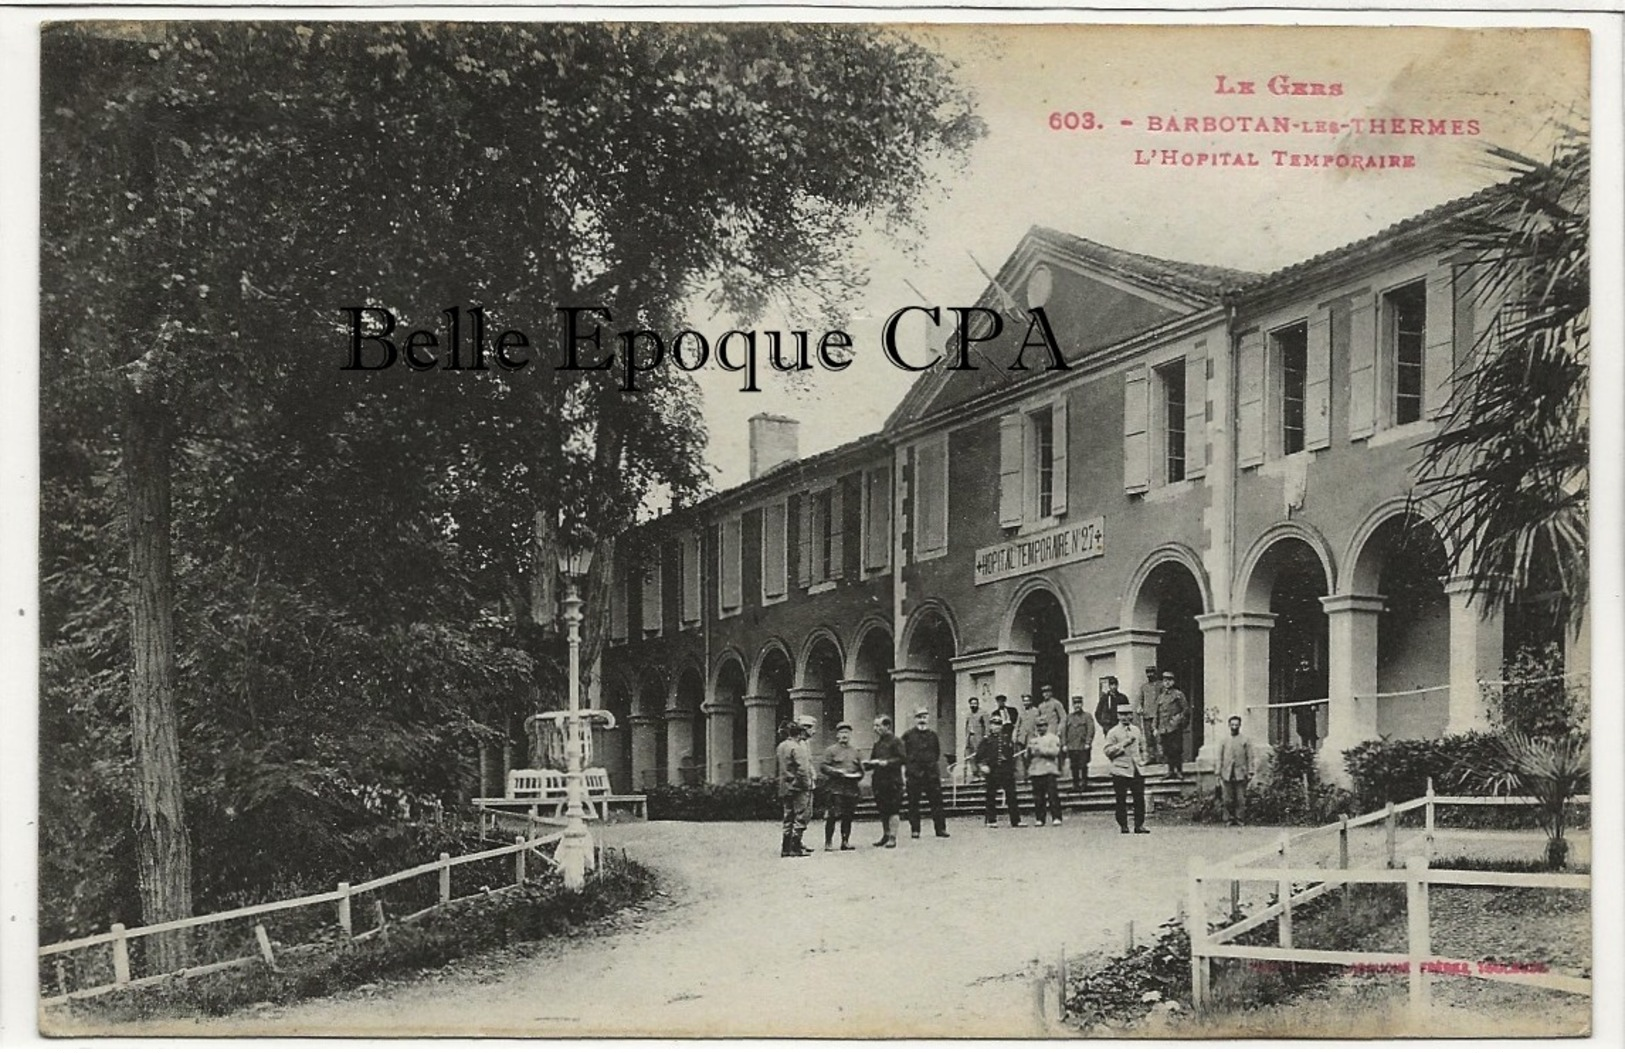 32 - BARBOTAN-les-THERMES - L'Hôpital Temporaire +++ Labouche Frères, #603 / Le Gers ++++ 1921 - Barbotan